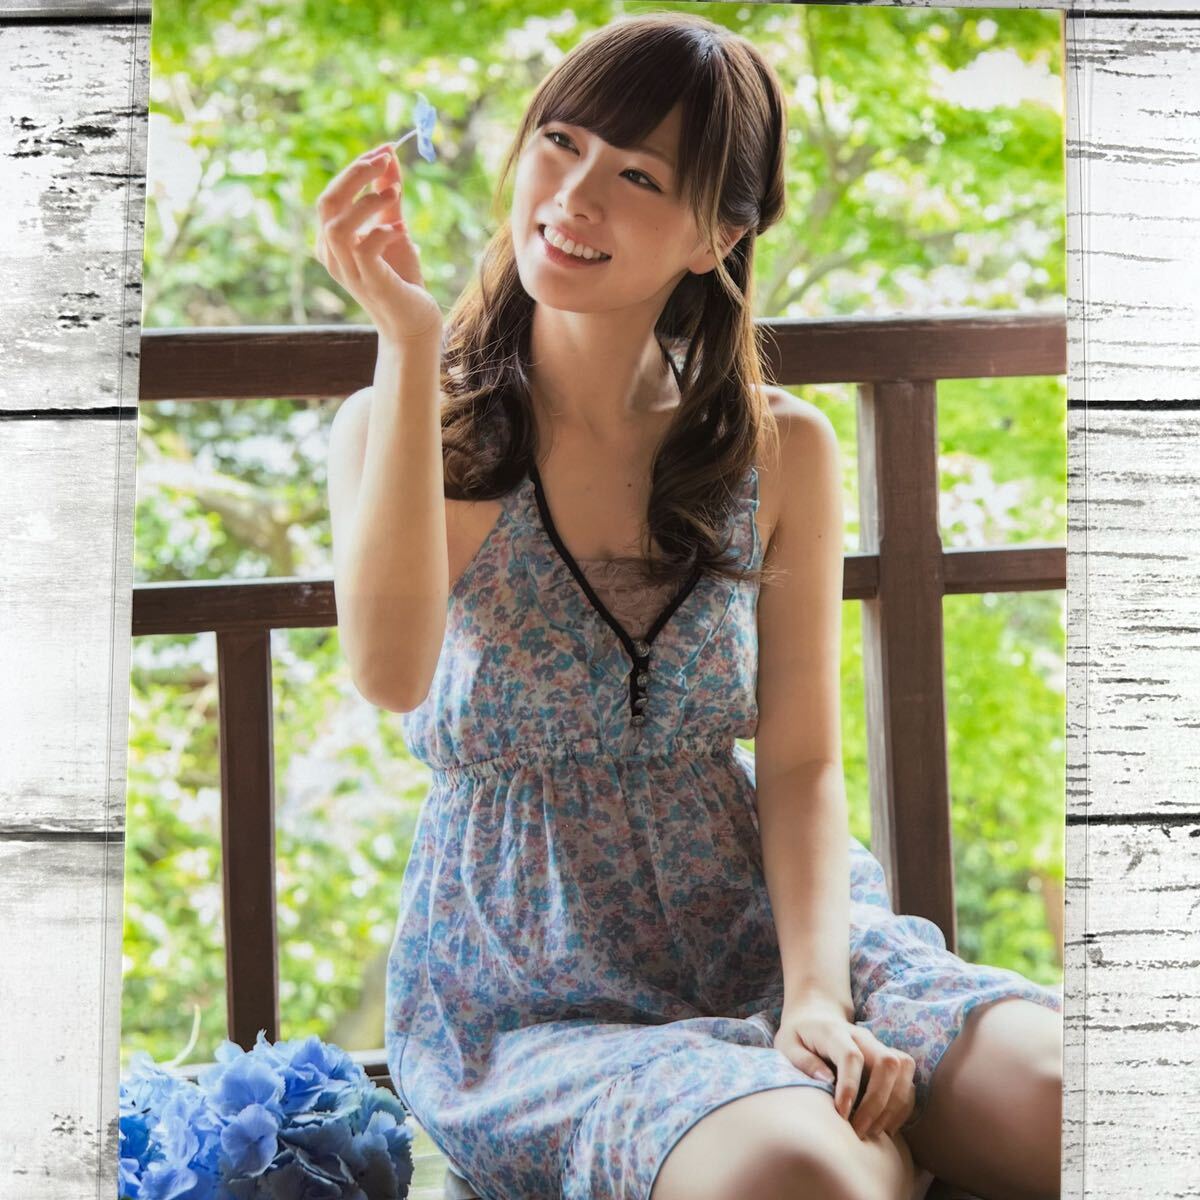 [ высокое качество ламинирование отделка ][ белый камень лен . Nogizaka 46 ] EX большой .2014 год 7 месяц номер журнал вырезки 6P A4 плёнка купальный костюм bikini model актер женщина super 